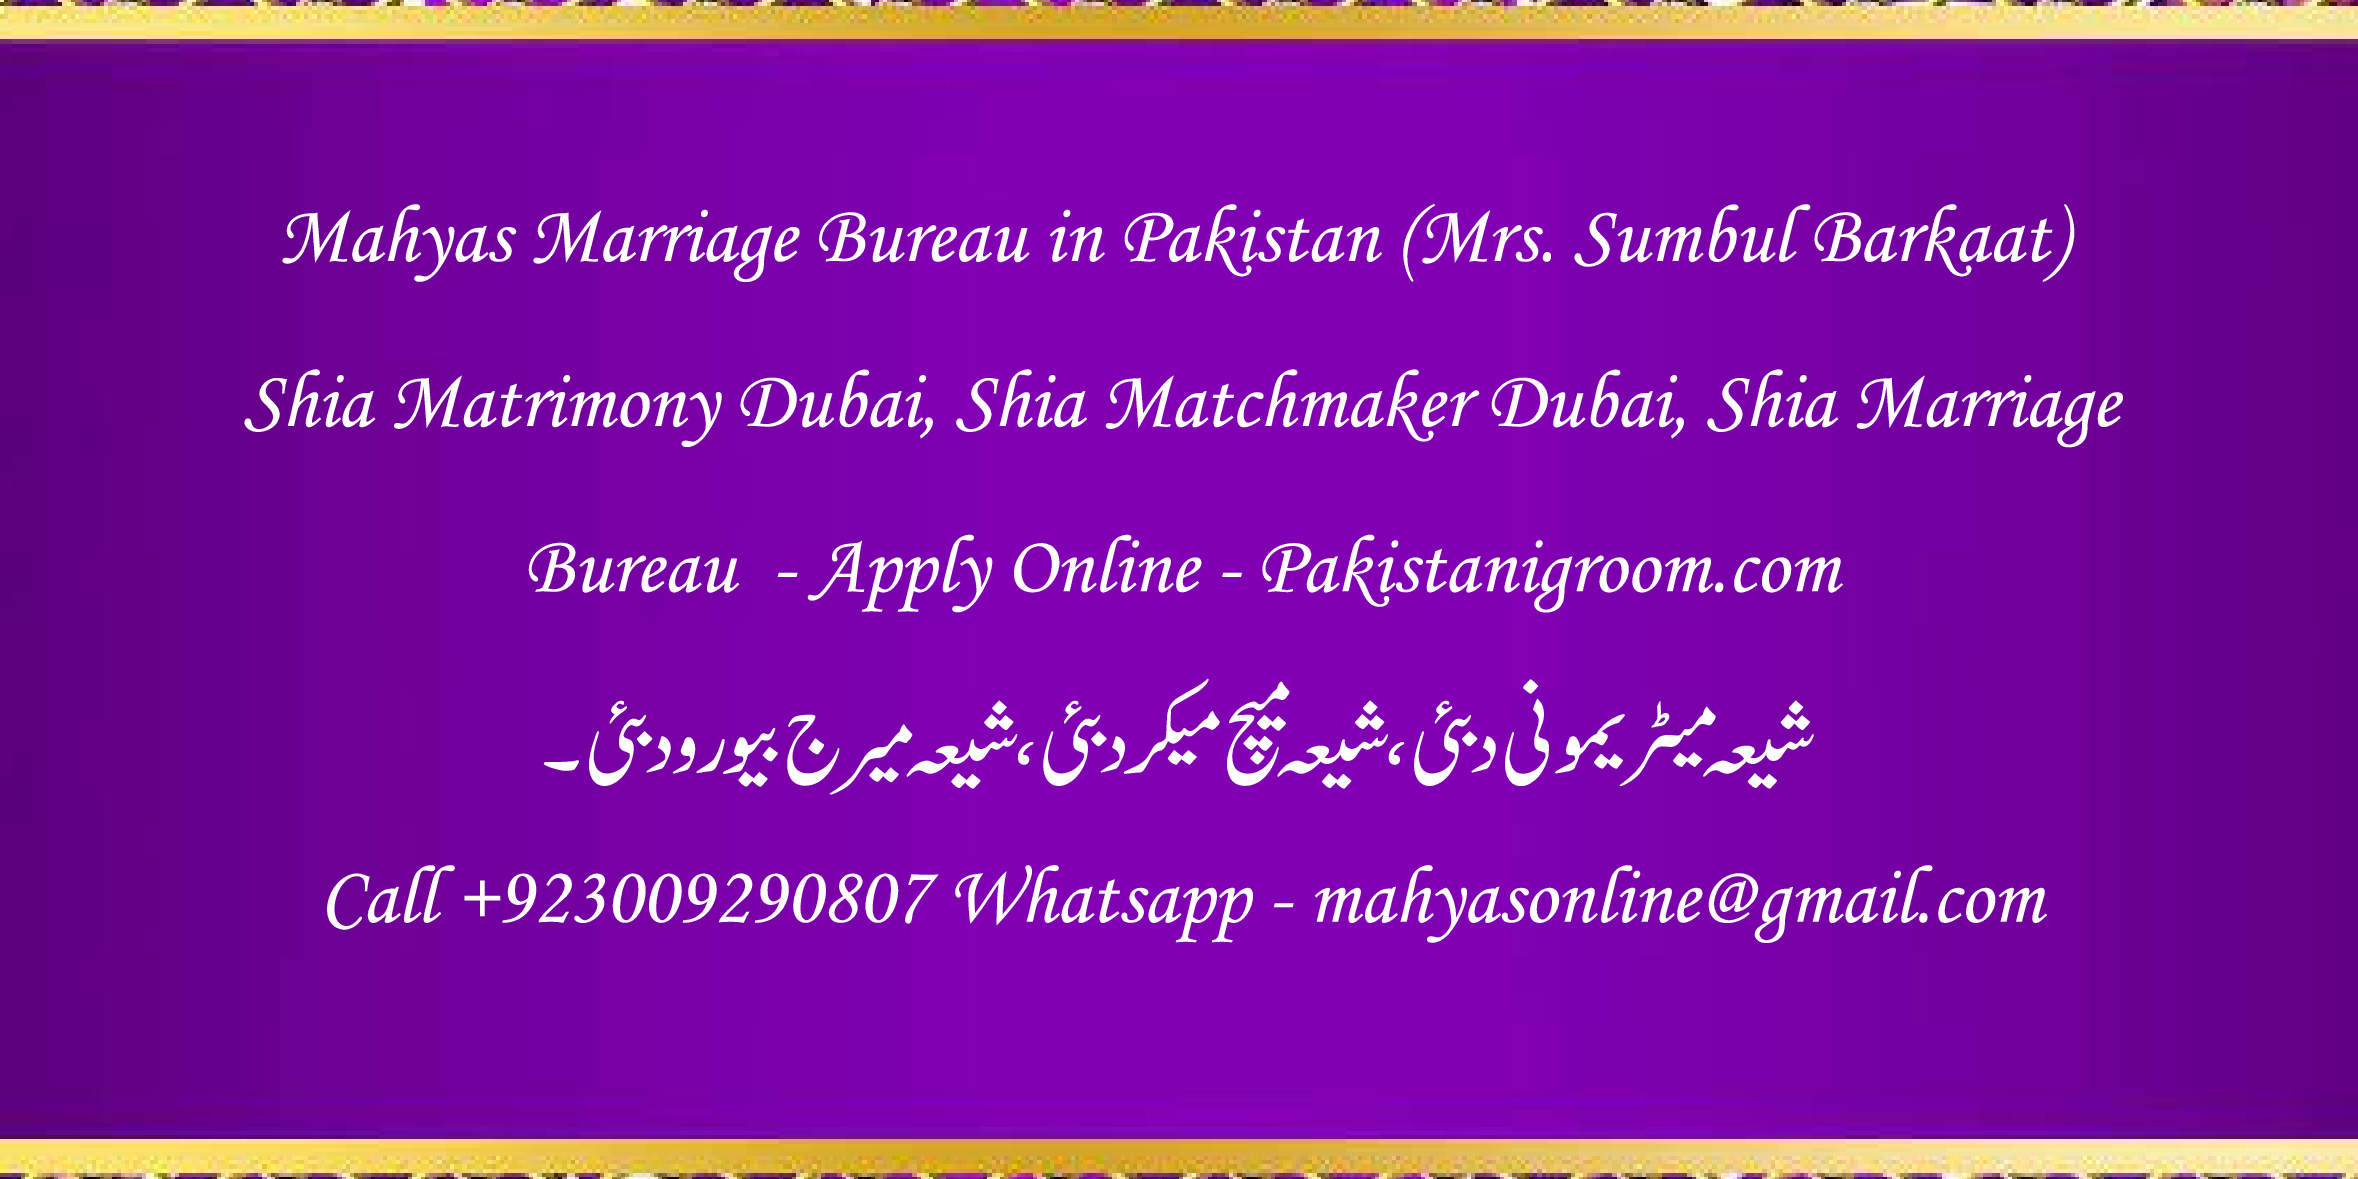 Mahyas-marriage-bureau-Karachi-Pakistan-for-Shia-Sunni-Remarriage-Divorce-Widow-Second-marriage-Punjabi-Pashto-Urdu-14.png